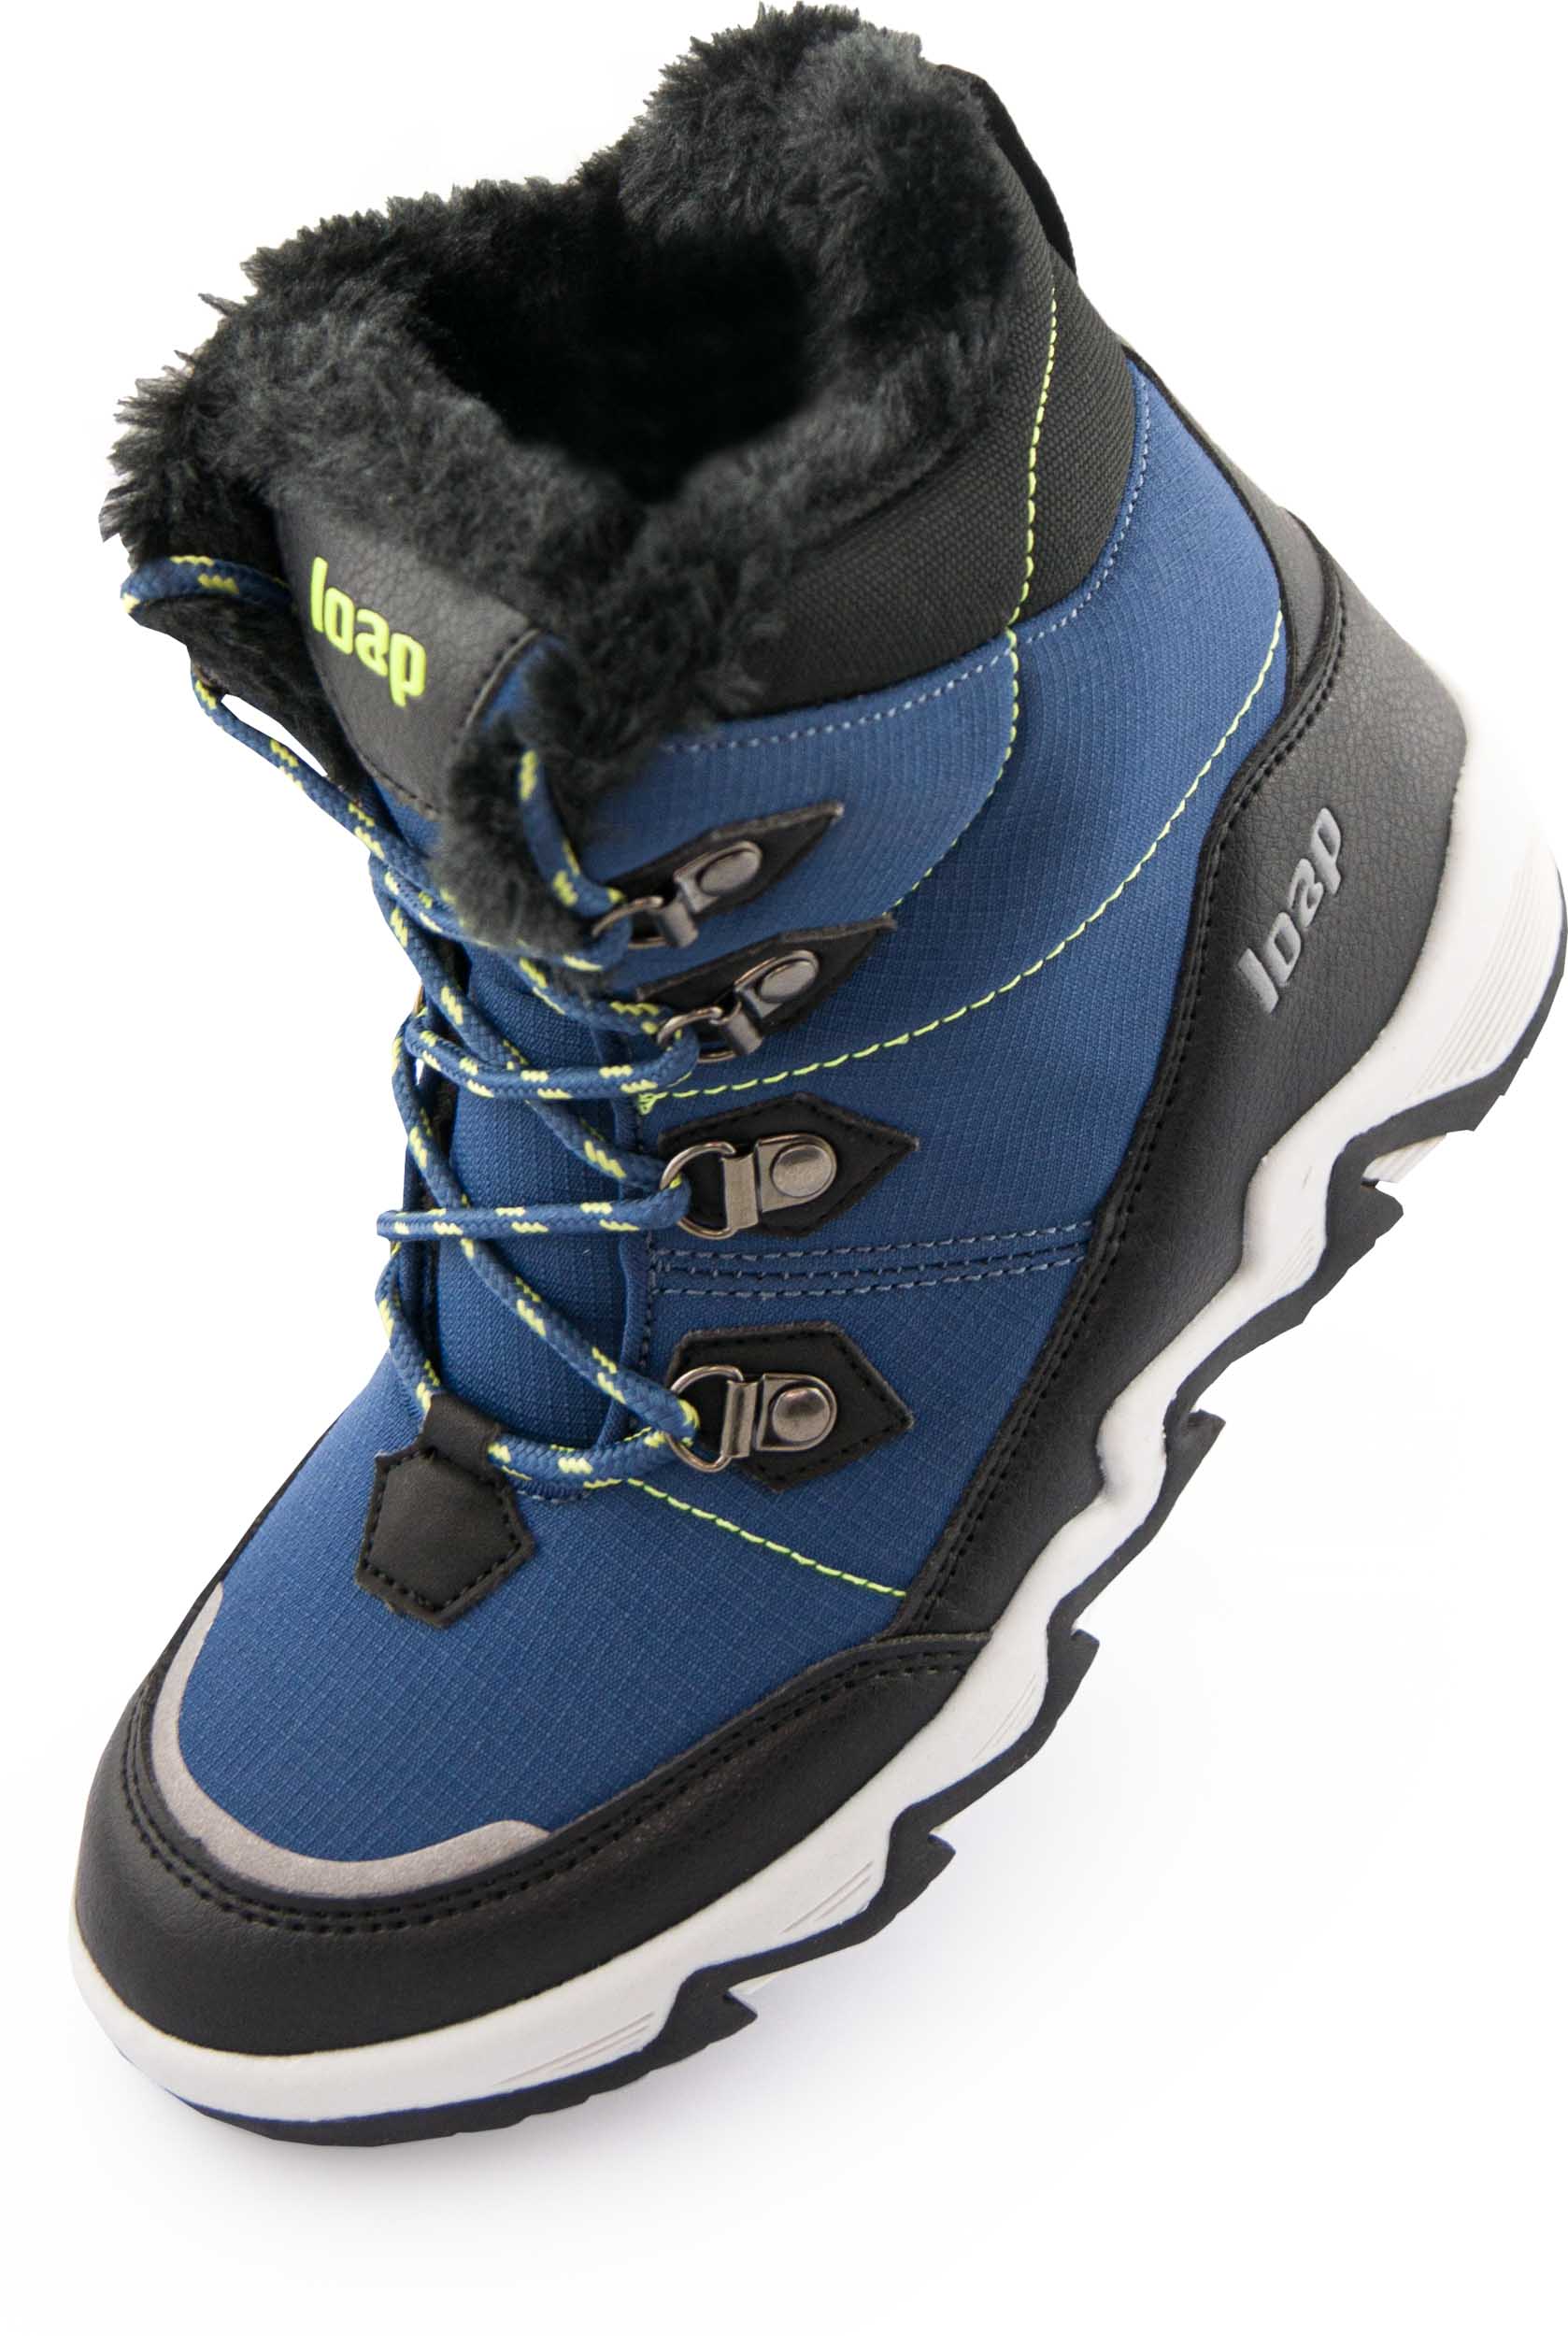 Dětské zimní boty LOAP LIMA blue|34